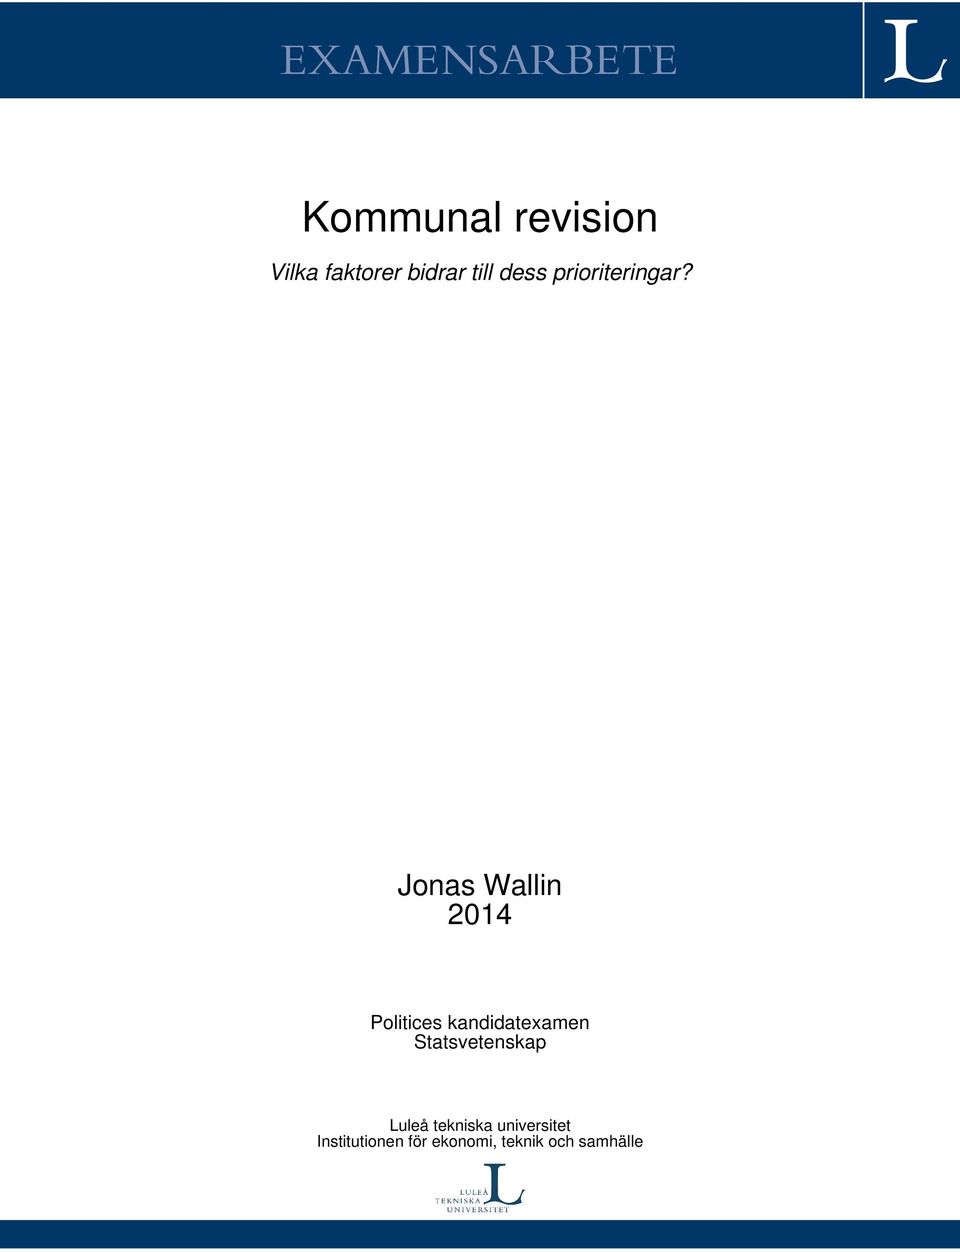 Jonas Wallin 2014 Politices kandidatexamen